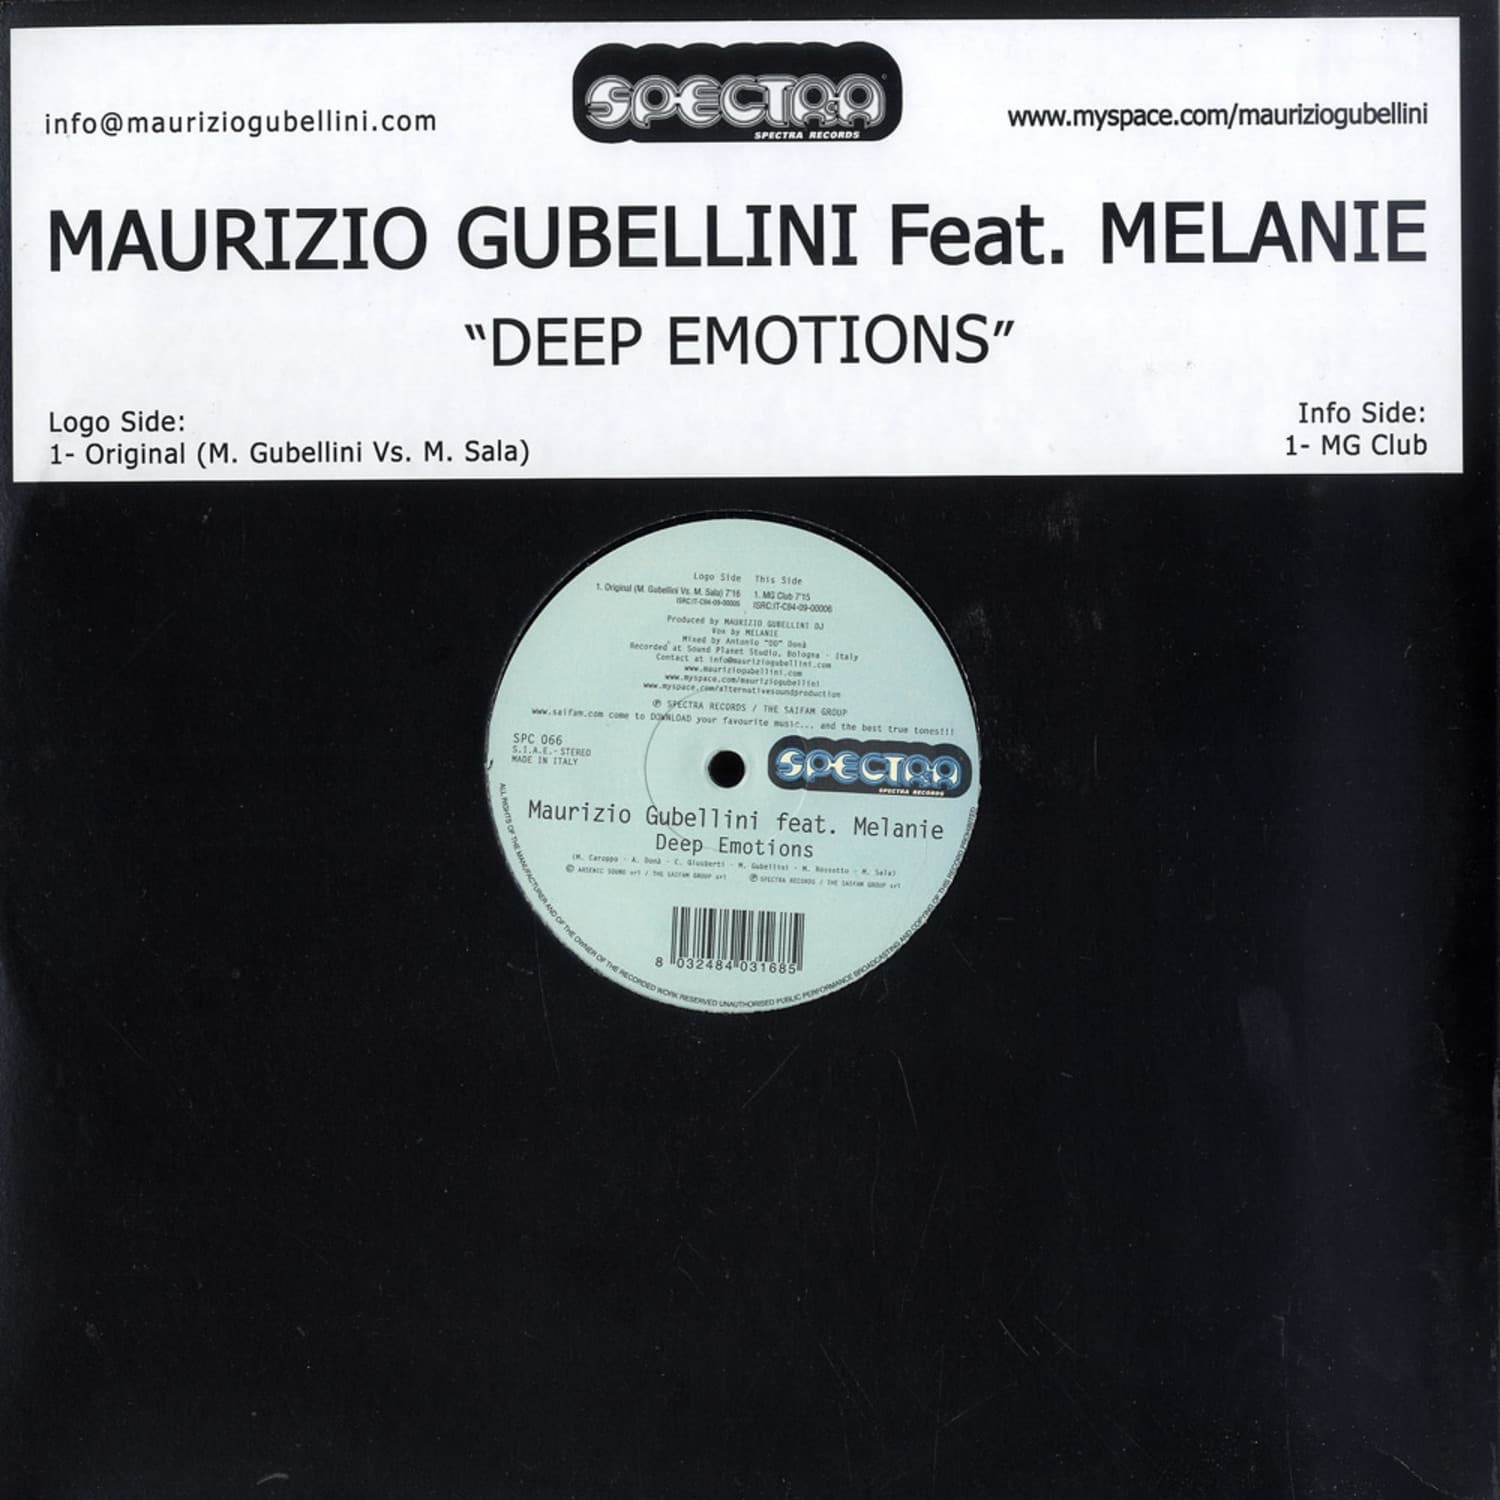 Maurizio Gubellini feat. Melanie - DEEP EMOTIONS